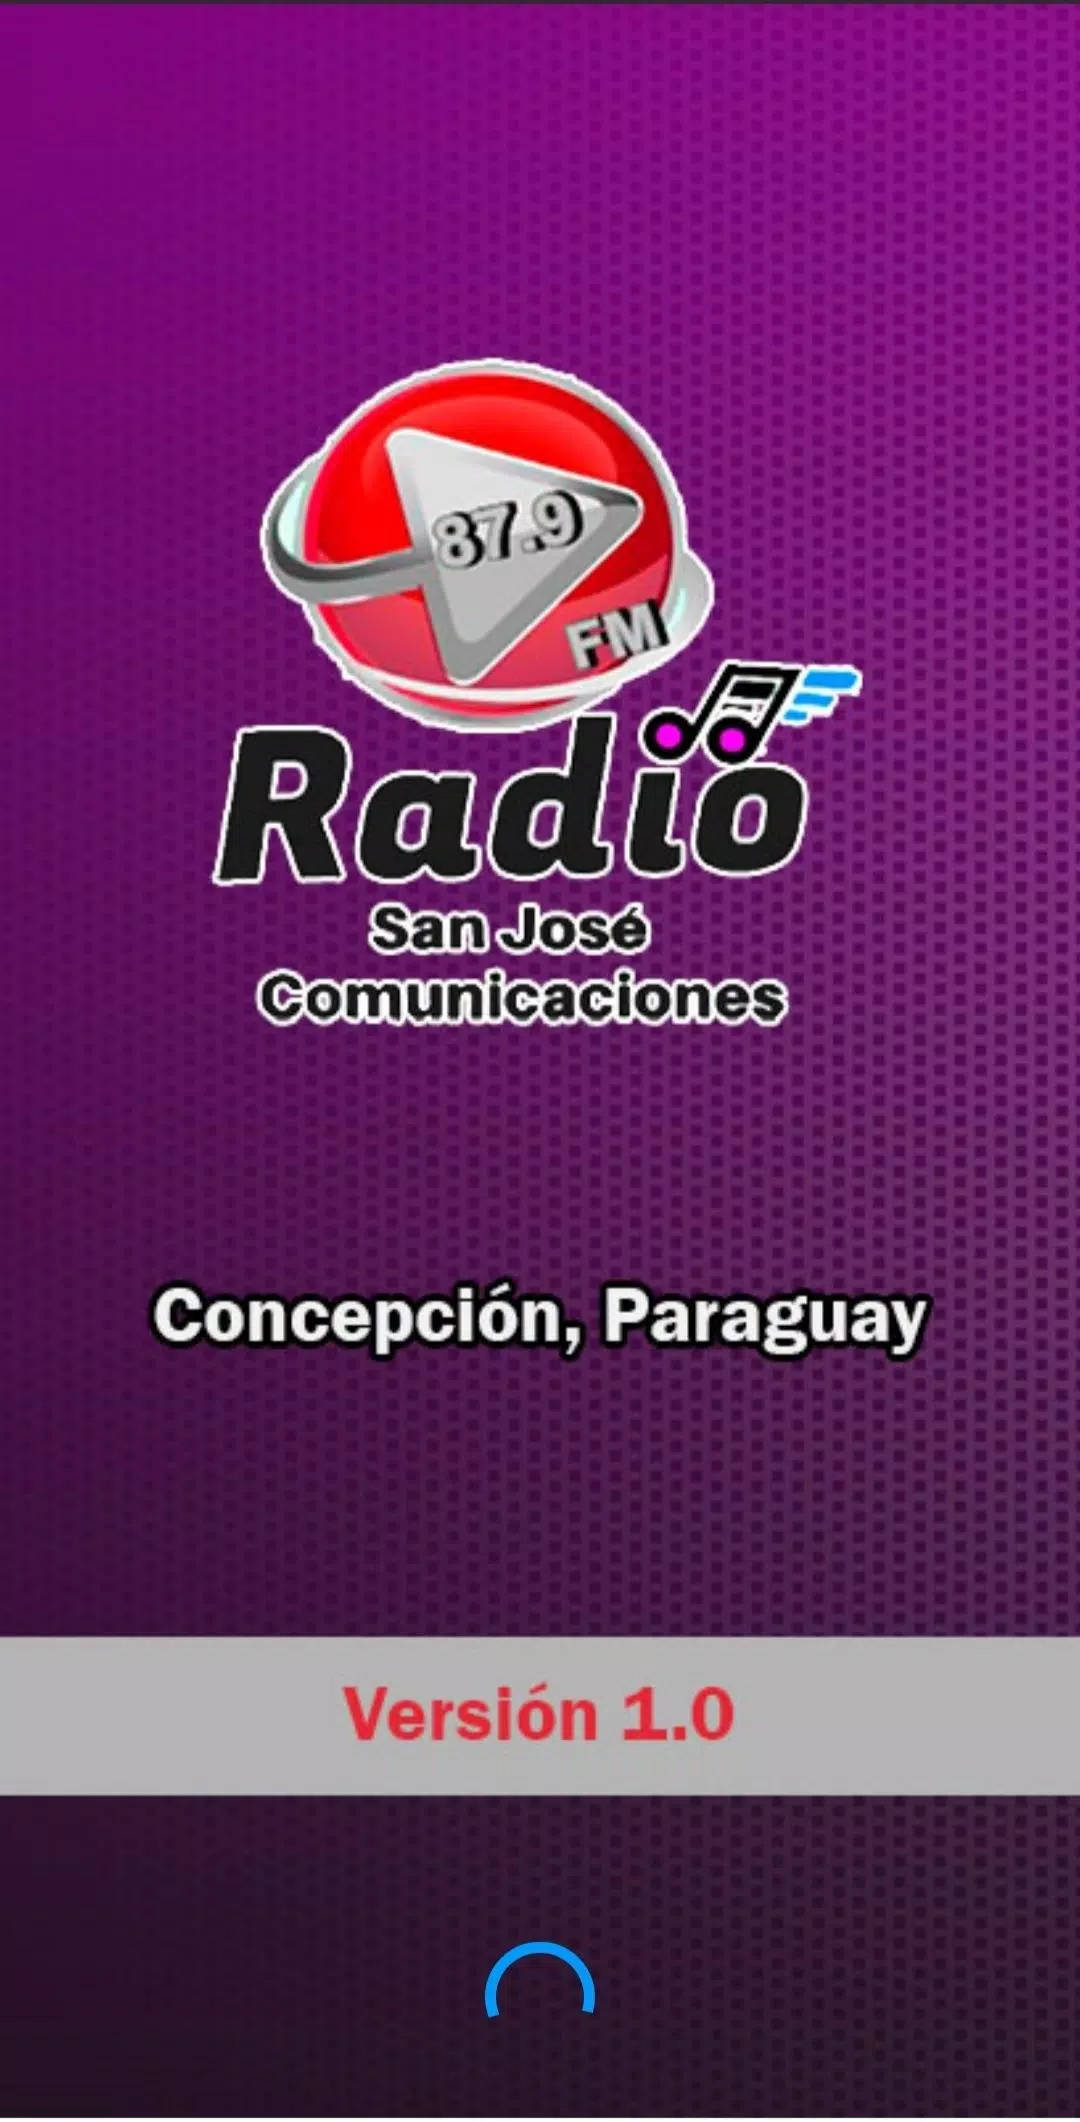 Descarga de APK de San José Comunicaciones 87.9 FM para Android